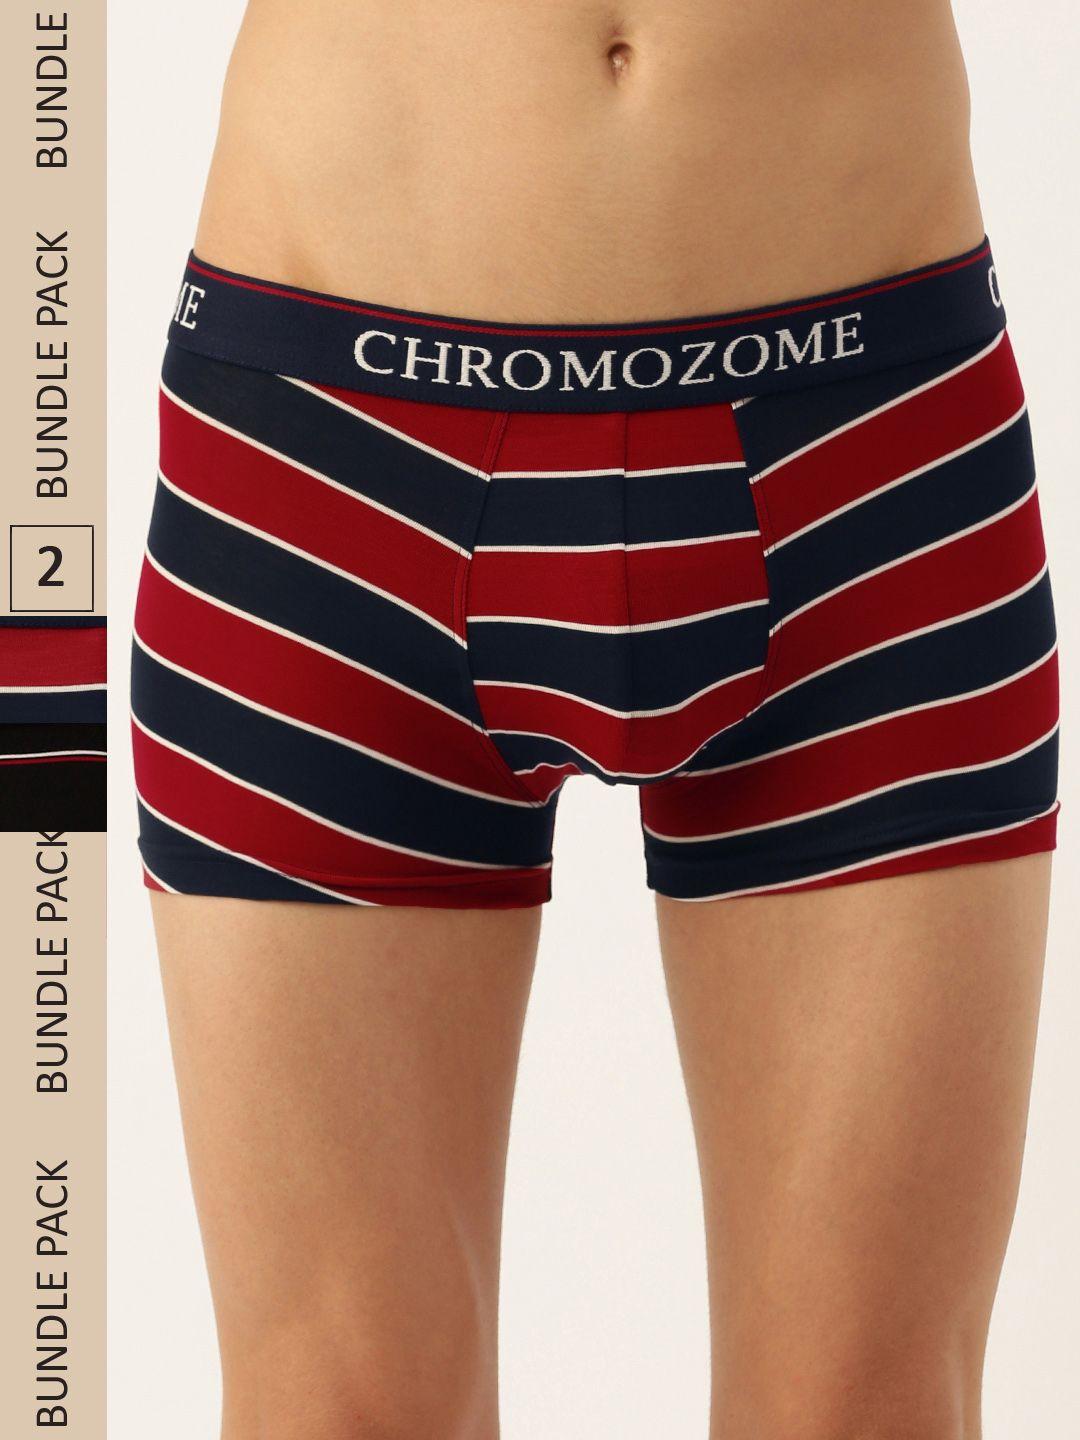 chromozome men pack of 2 ultra-premium striped trunks 8902733643580